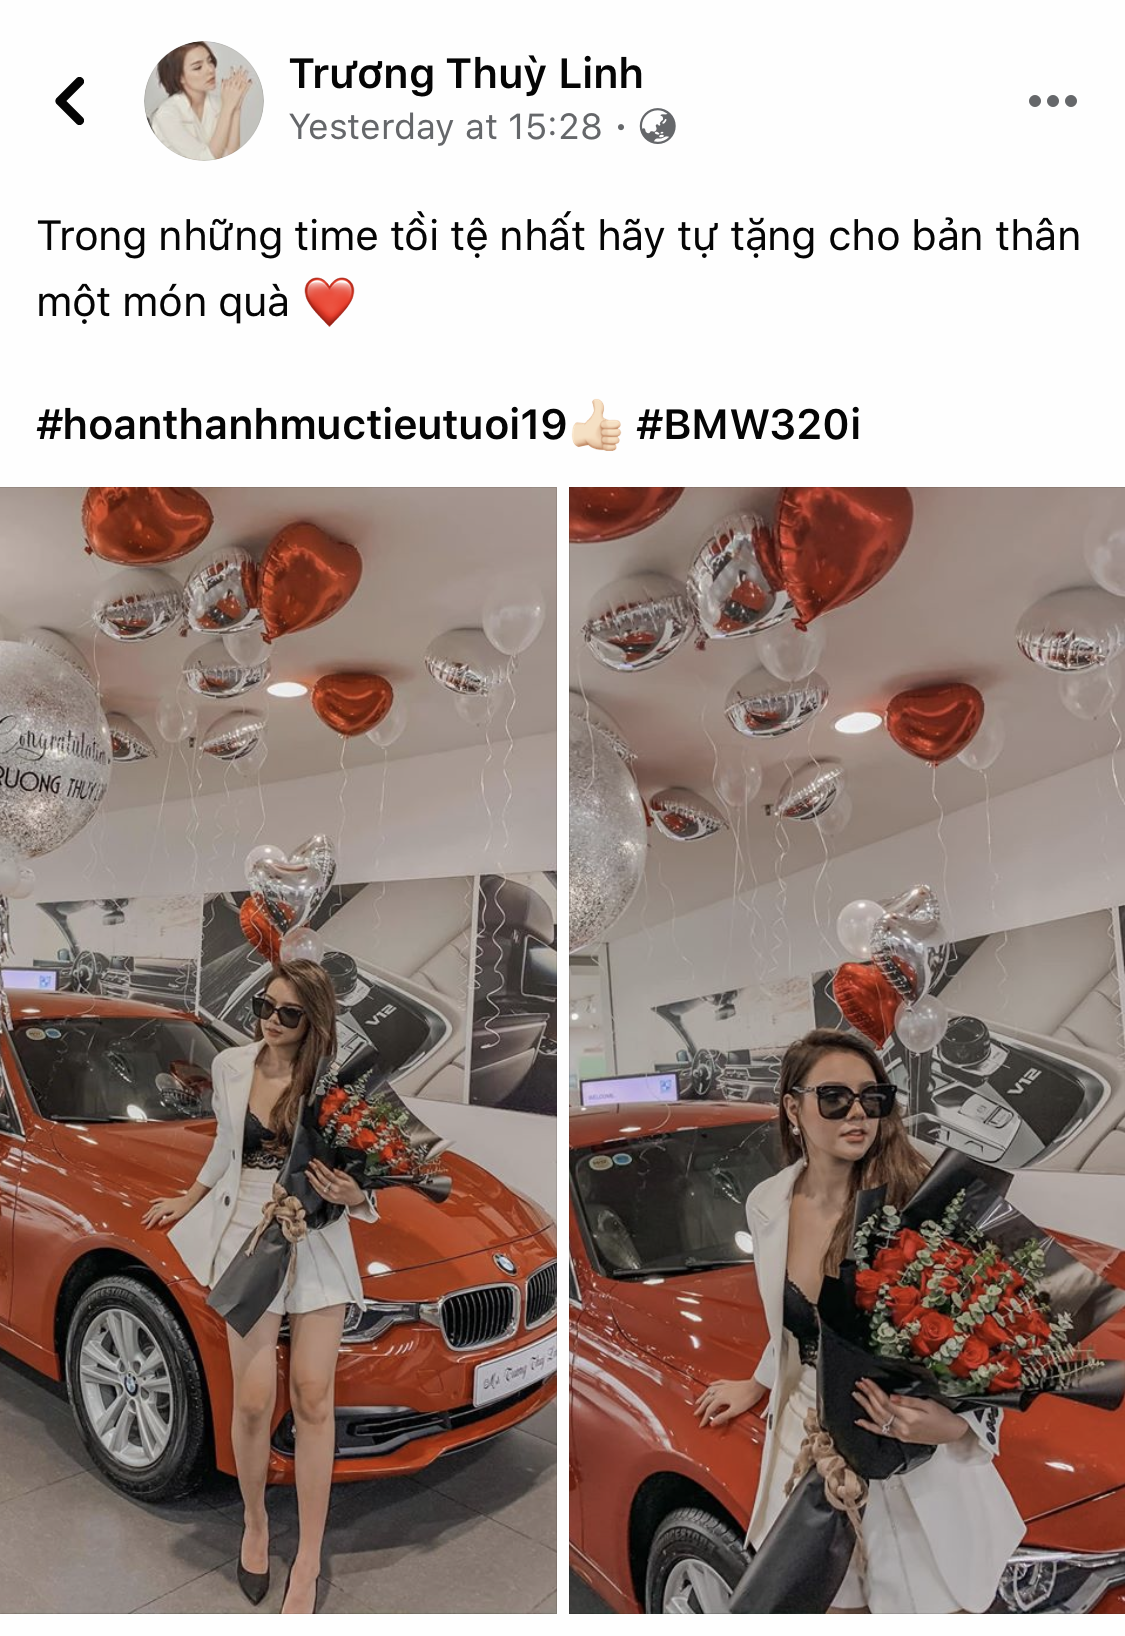 Hot girl Hà thành 19 tuổi sắm BMW 320i hơn 1,3 tỷ đồng, tuyên bố tự tặng bản thân trong thời gian tồi tệ nhất - Ảnh 3.